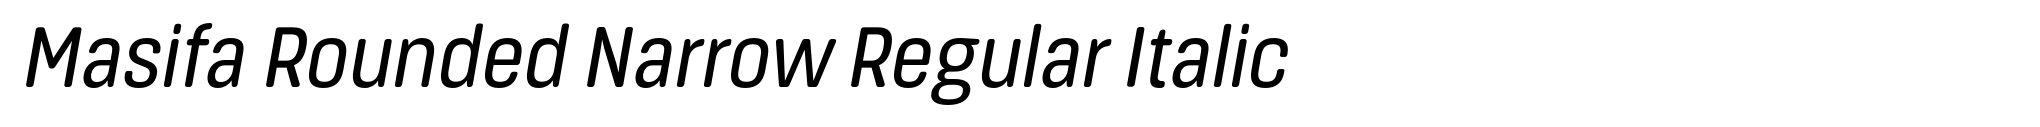 Masifa Rounded Narrow Regular Italic image